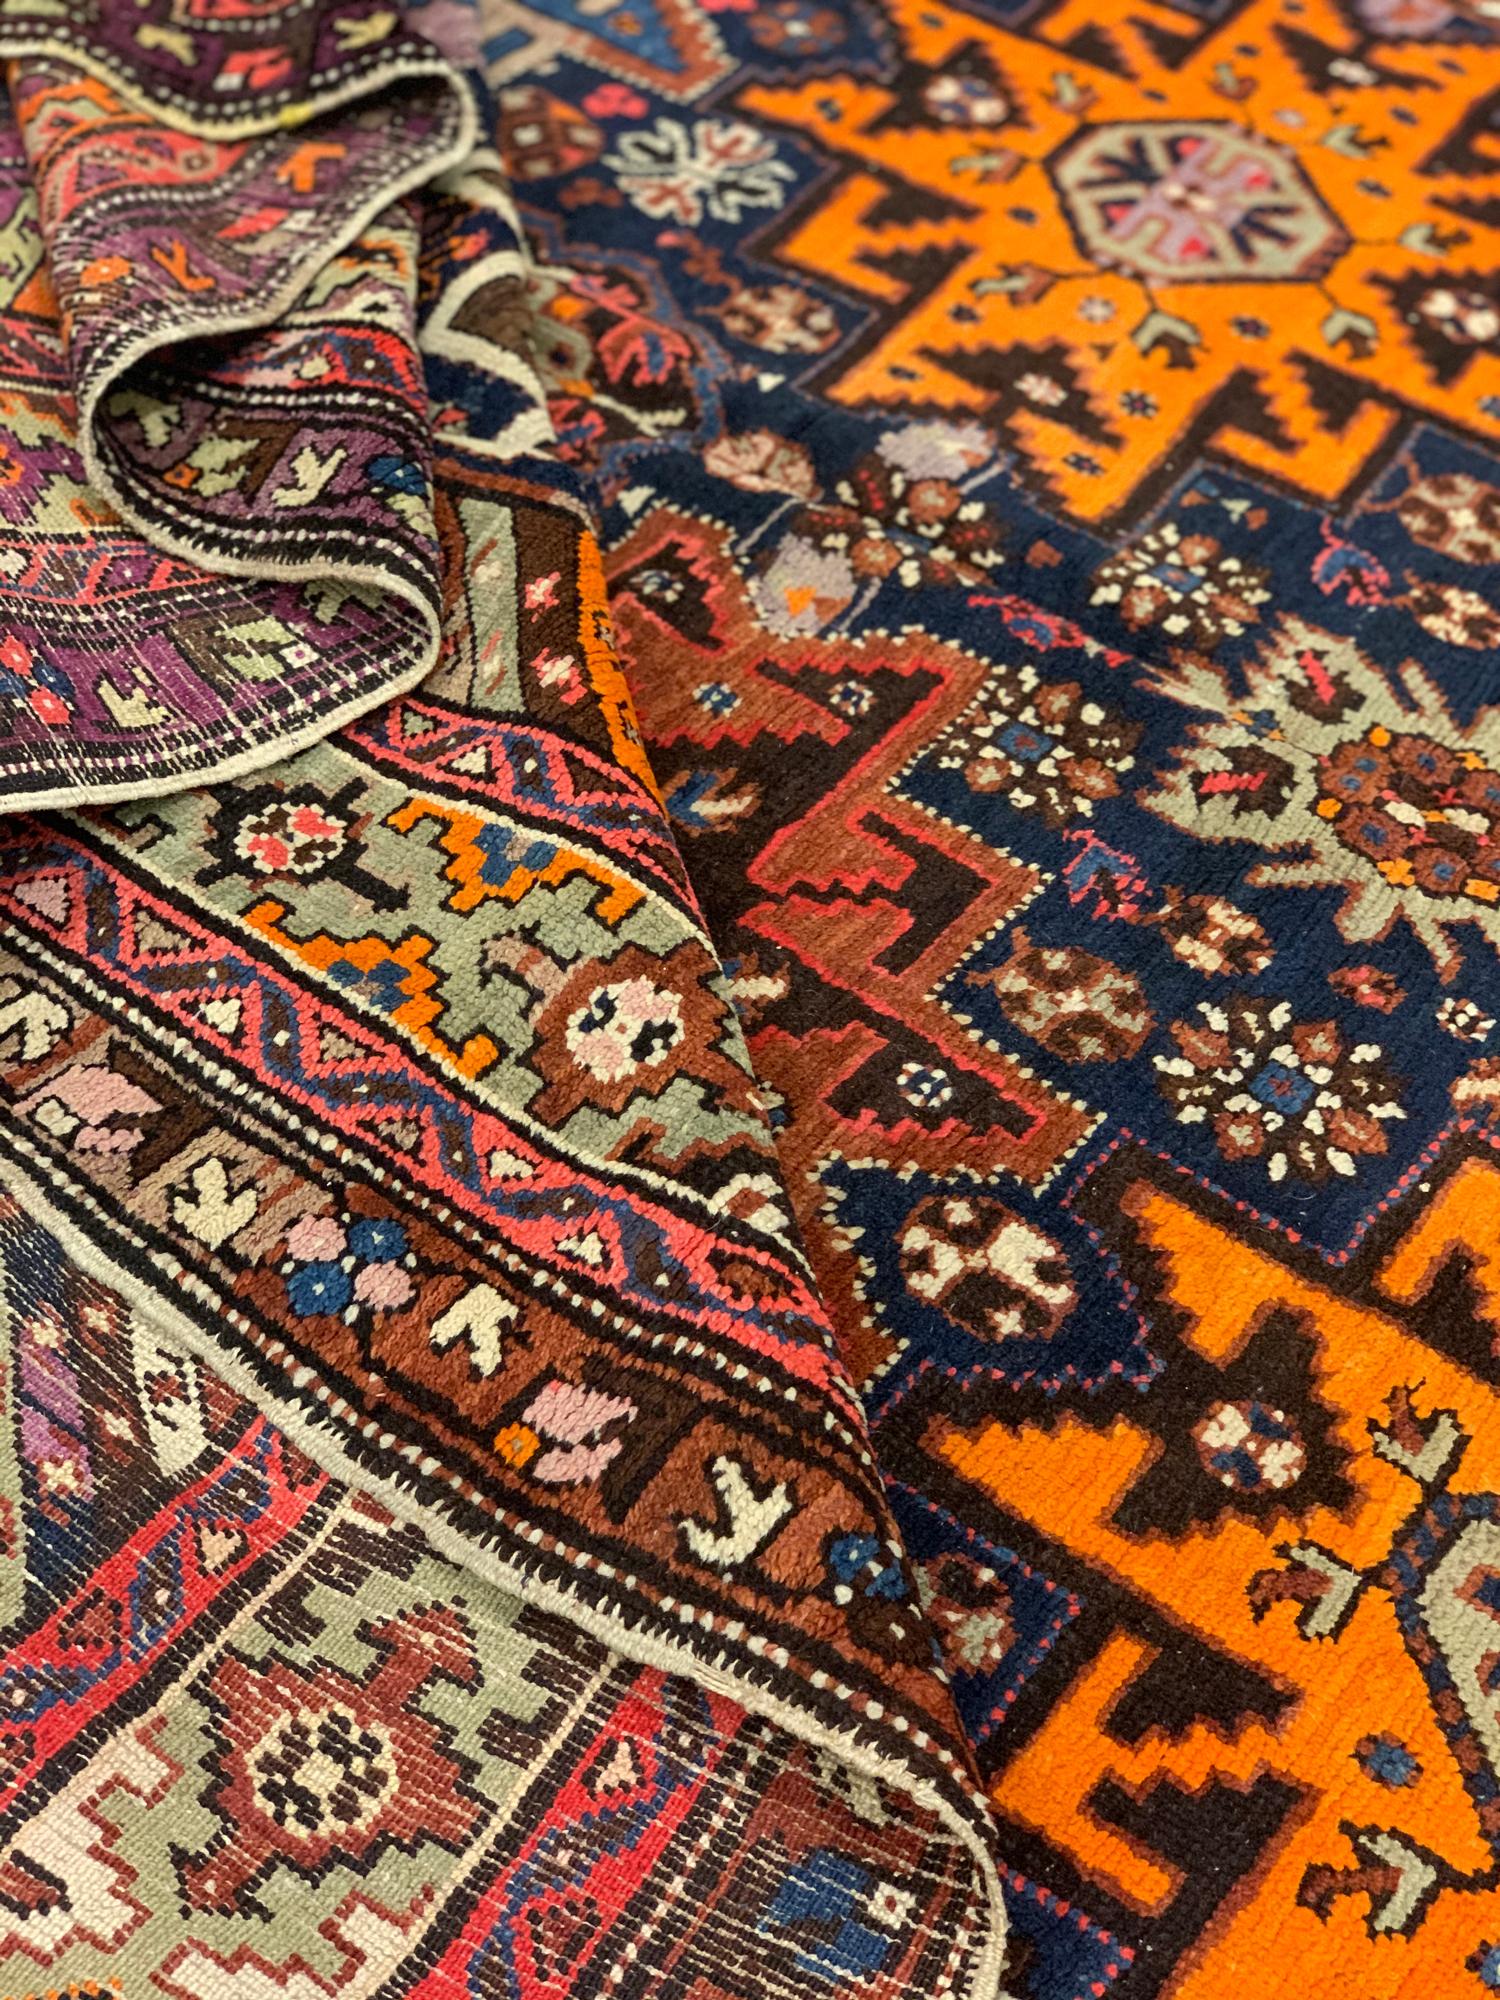 Dieser feine kasachische Wollteppich ist ein fantastisches Beispiel für antike Teppiche, die zu Beginn des 21. Jahrhunderts in der kasachischen Region des Kaukasus gewebt wurden. Das Design weist ein traditionelles geometrisches Sternmuster auf, das